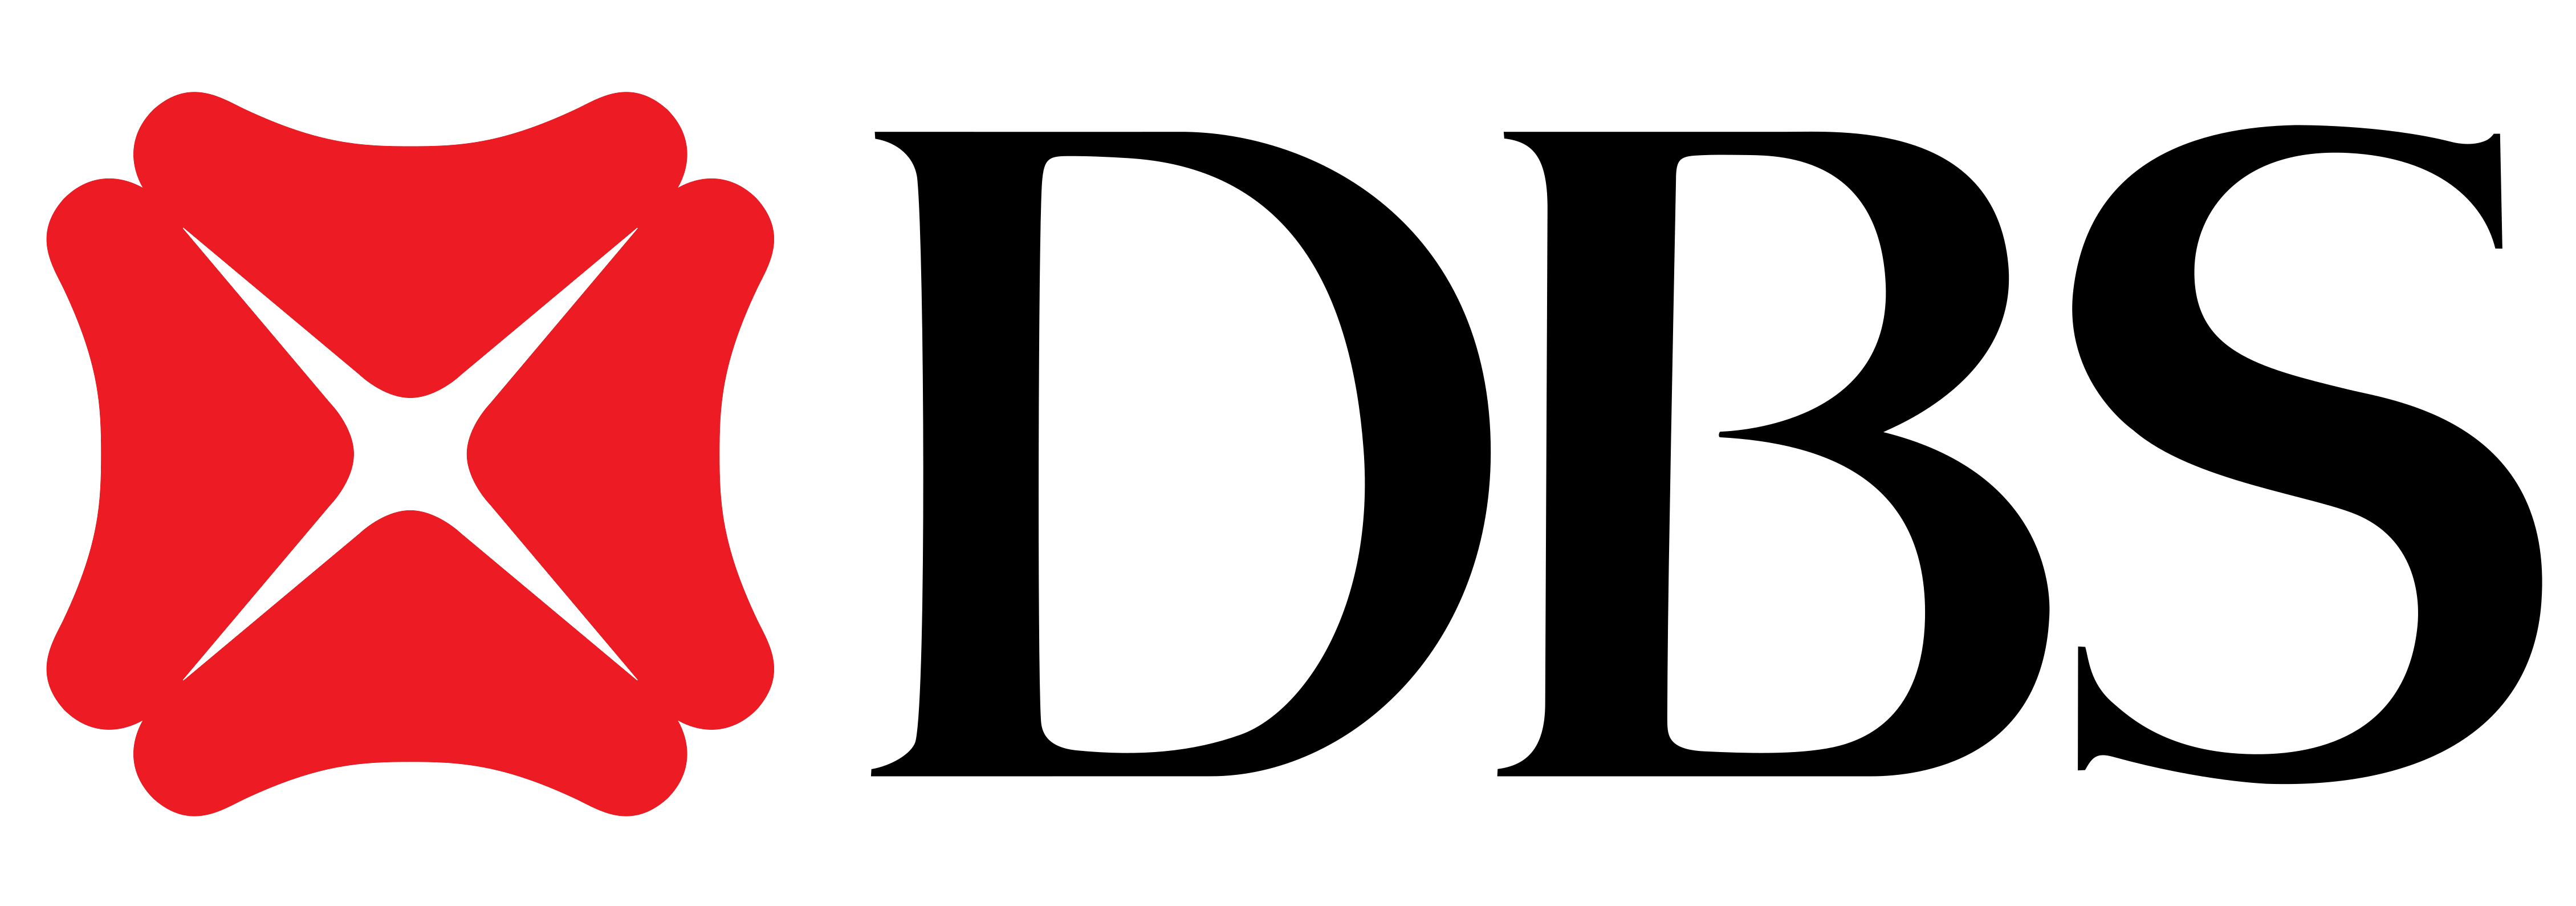 cbs logo vector